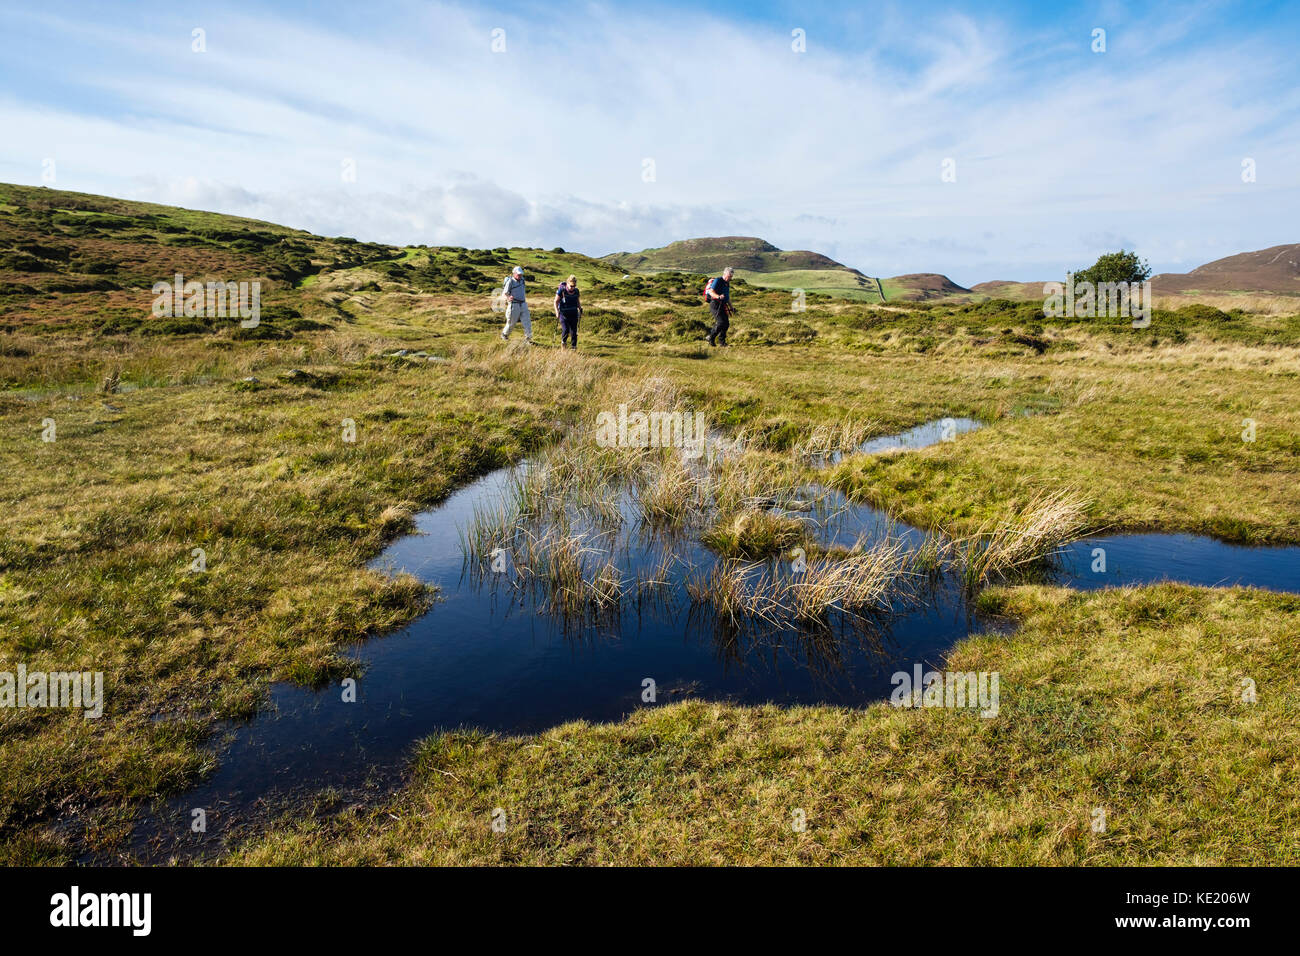 Piscina altopiano nella brughiera con tre escursionisti a piedi nella campagna a nord del Parco Nazionale di Snowdonia. Conwy, il Galles del Nord, Regno Unito, Gran Bretagna Foto Stock